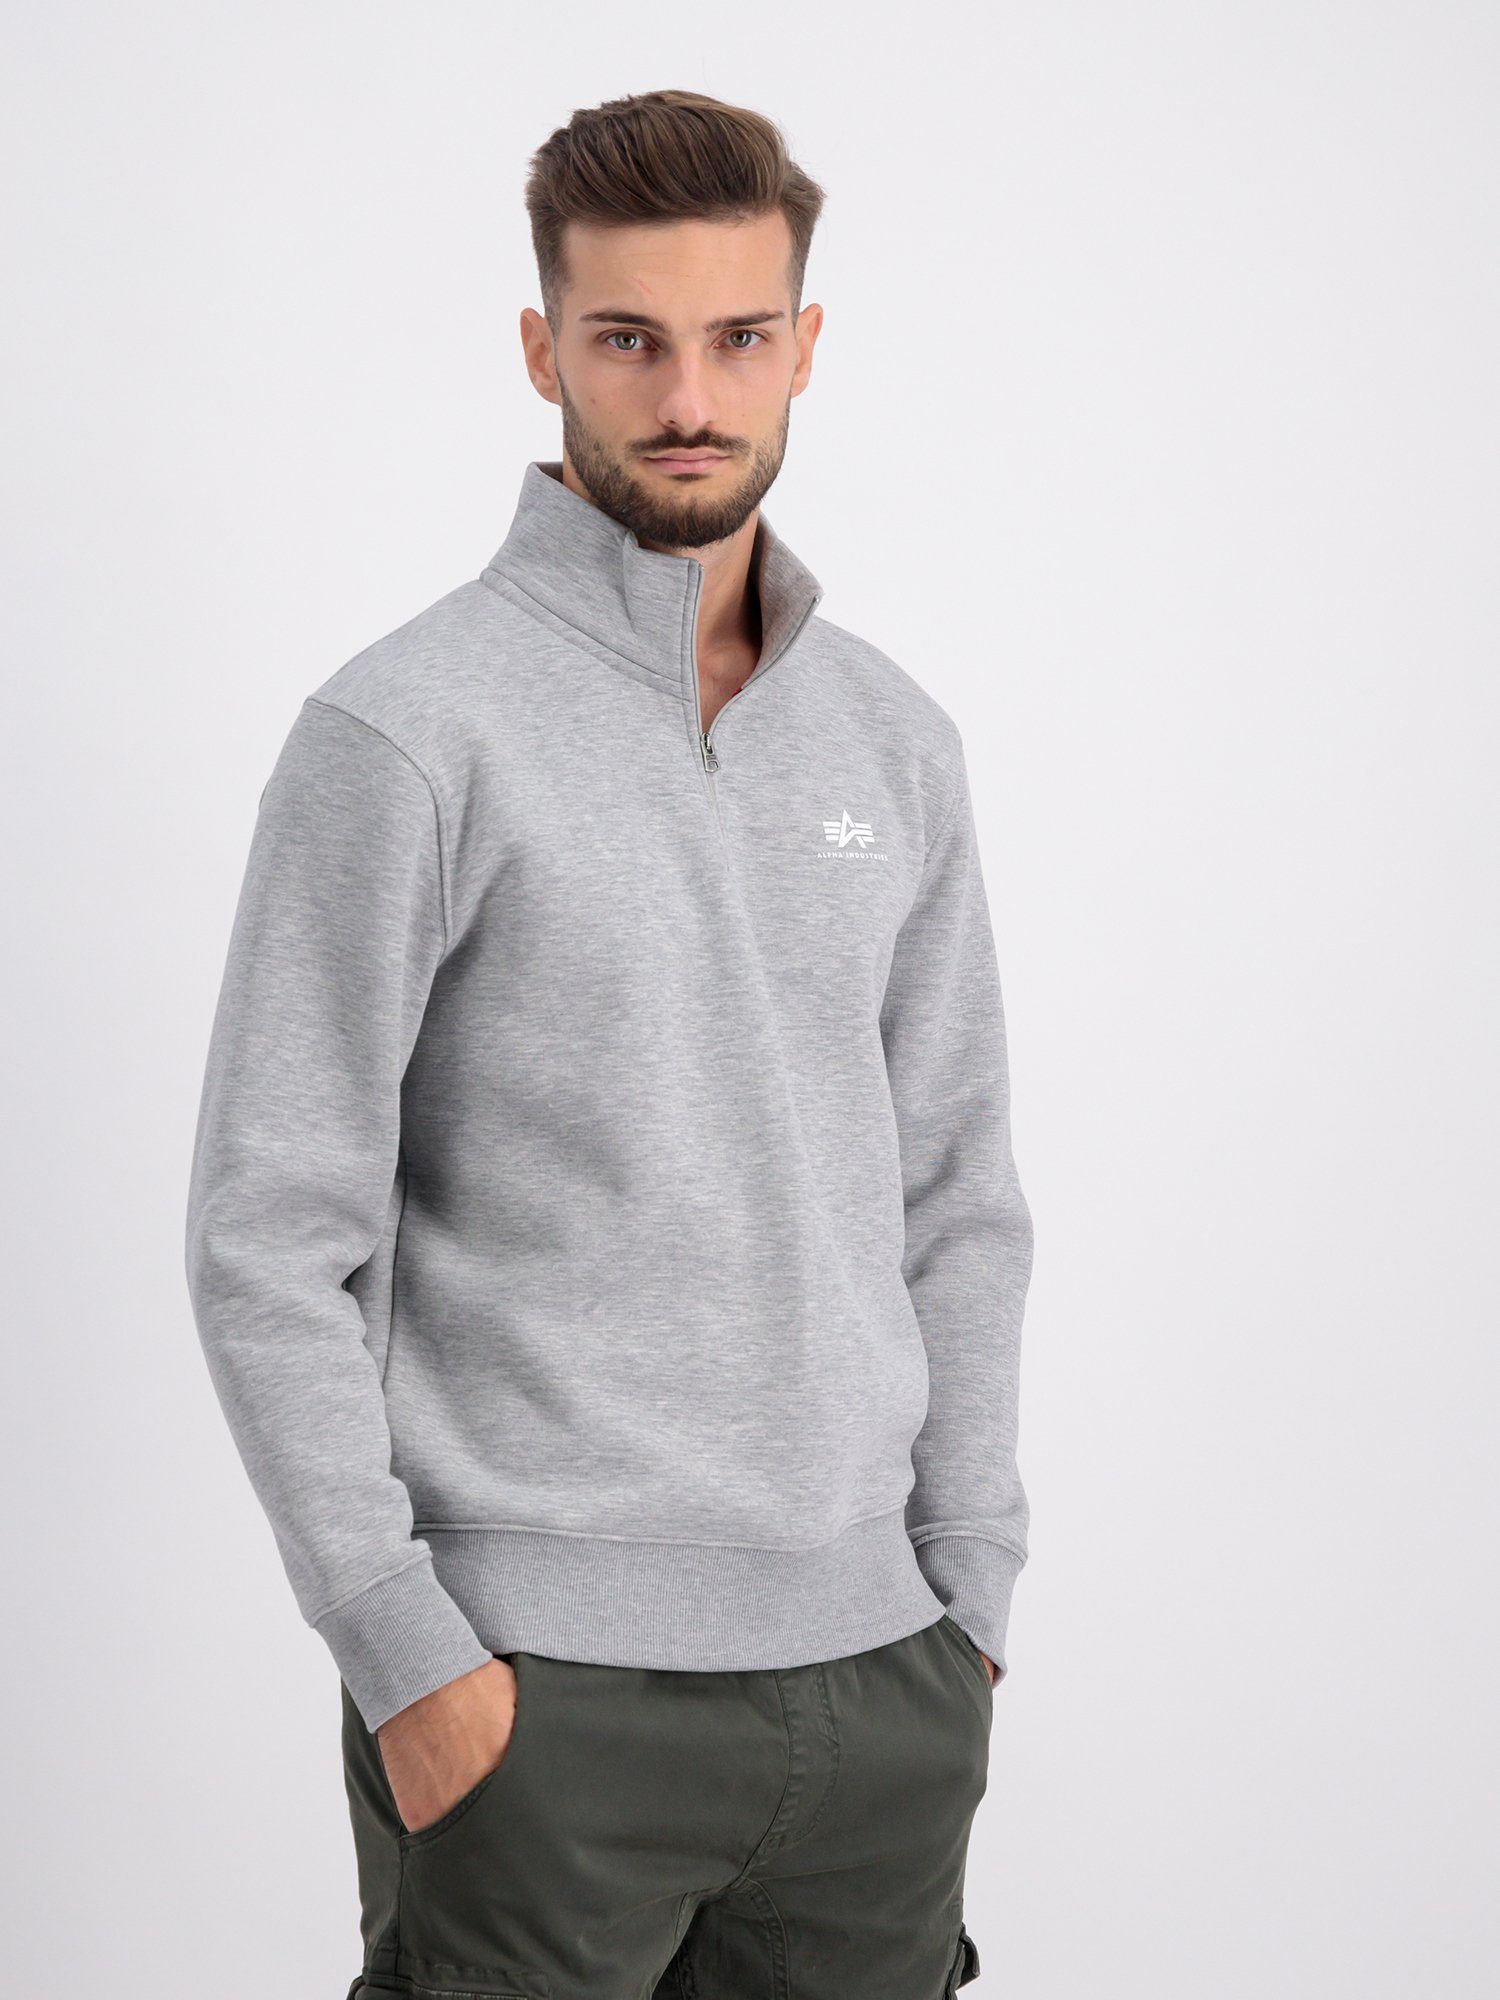 Half - heather Industries Sweatshirts Zip Sweater Alpha Alpha SL Men grey Industries Sweater